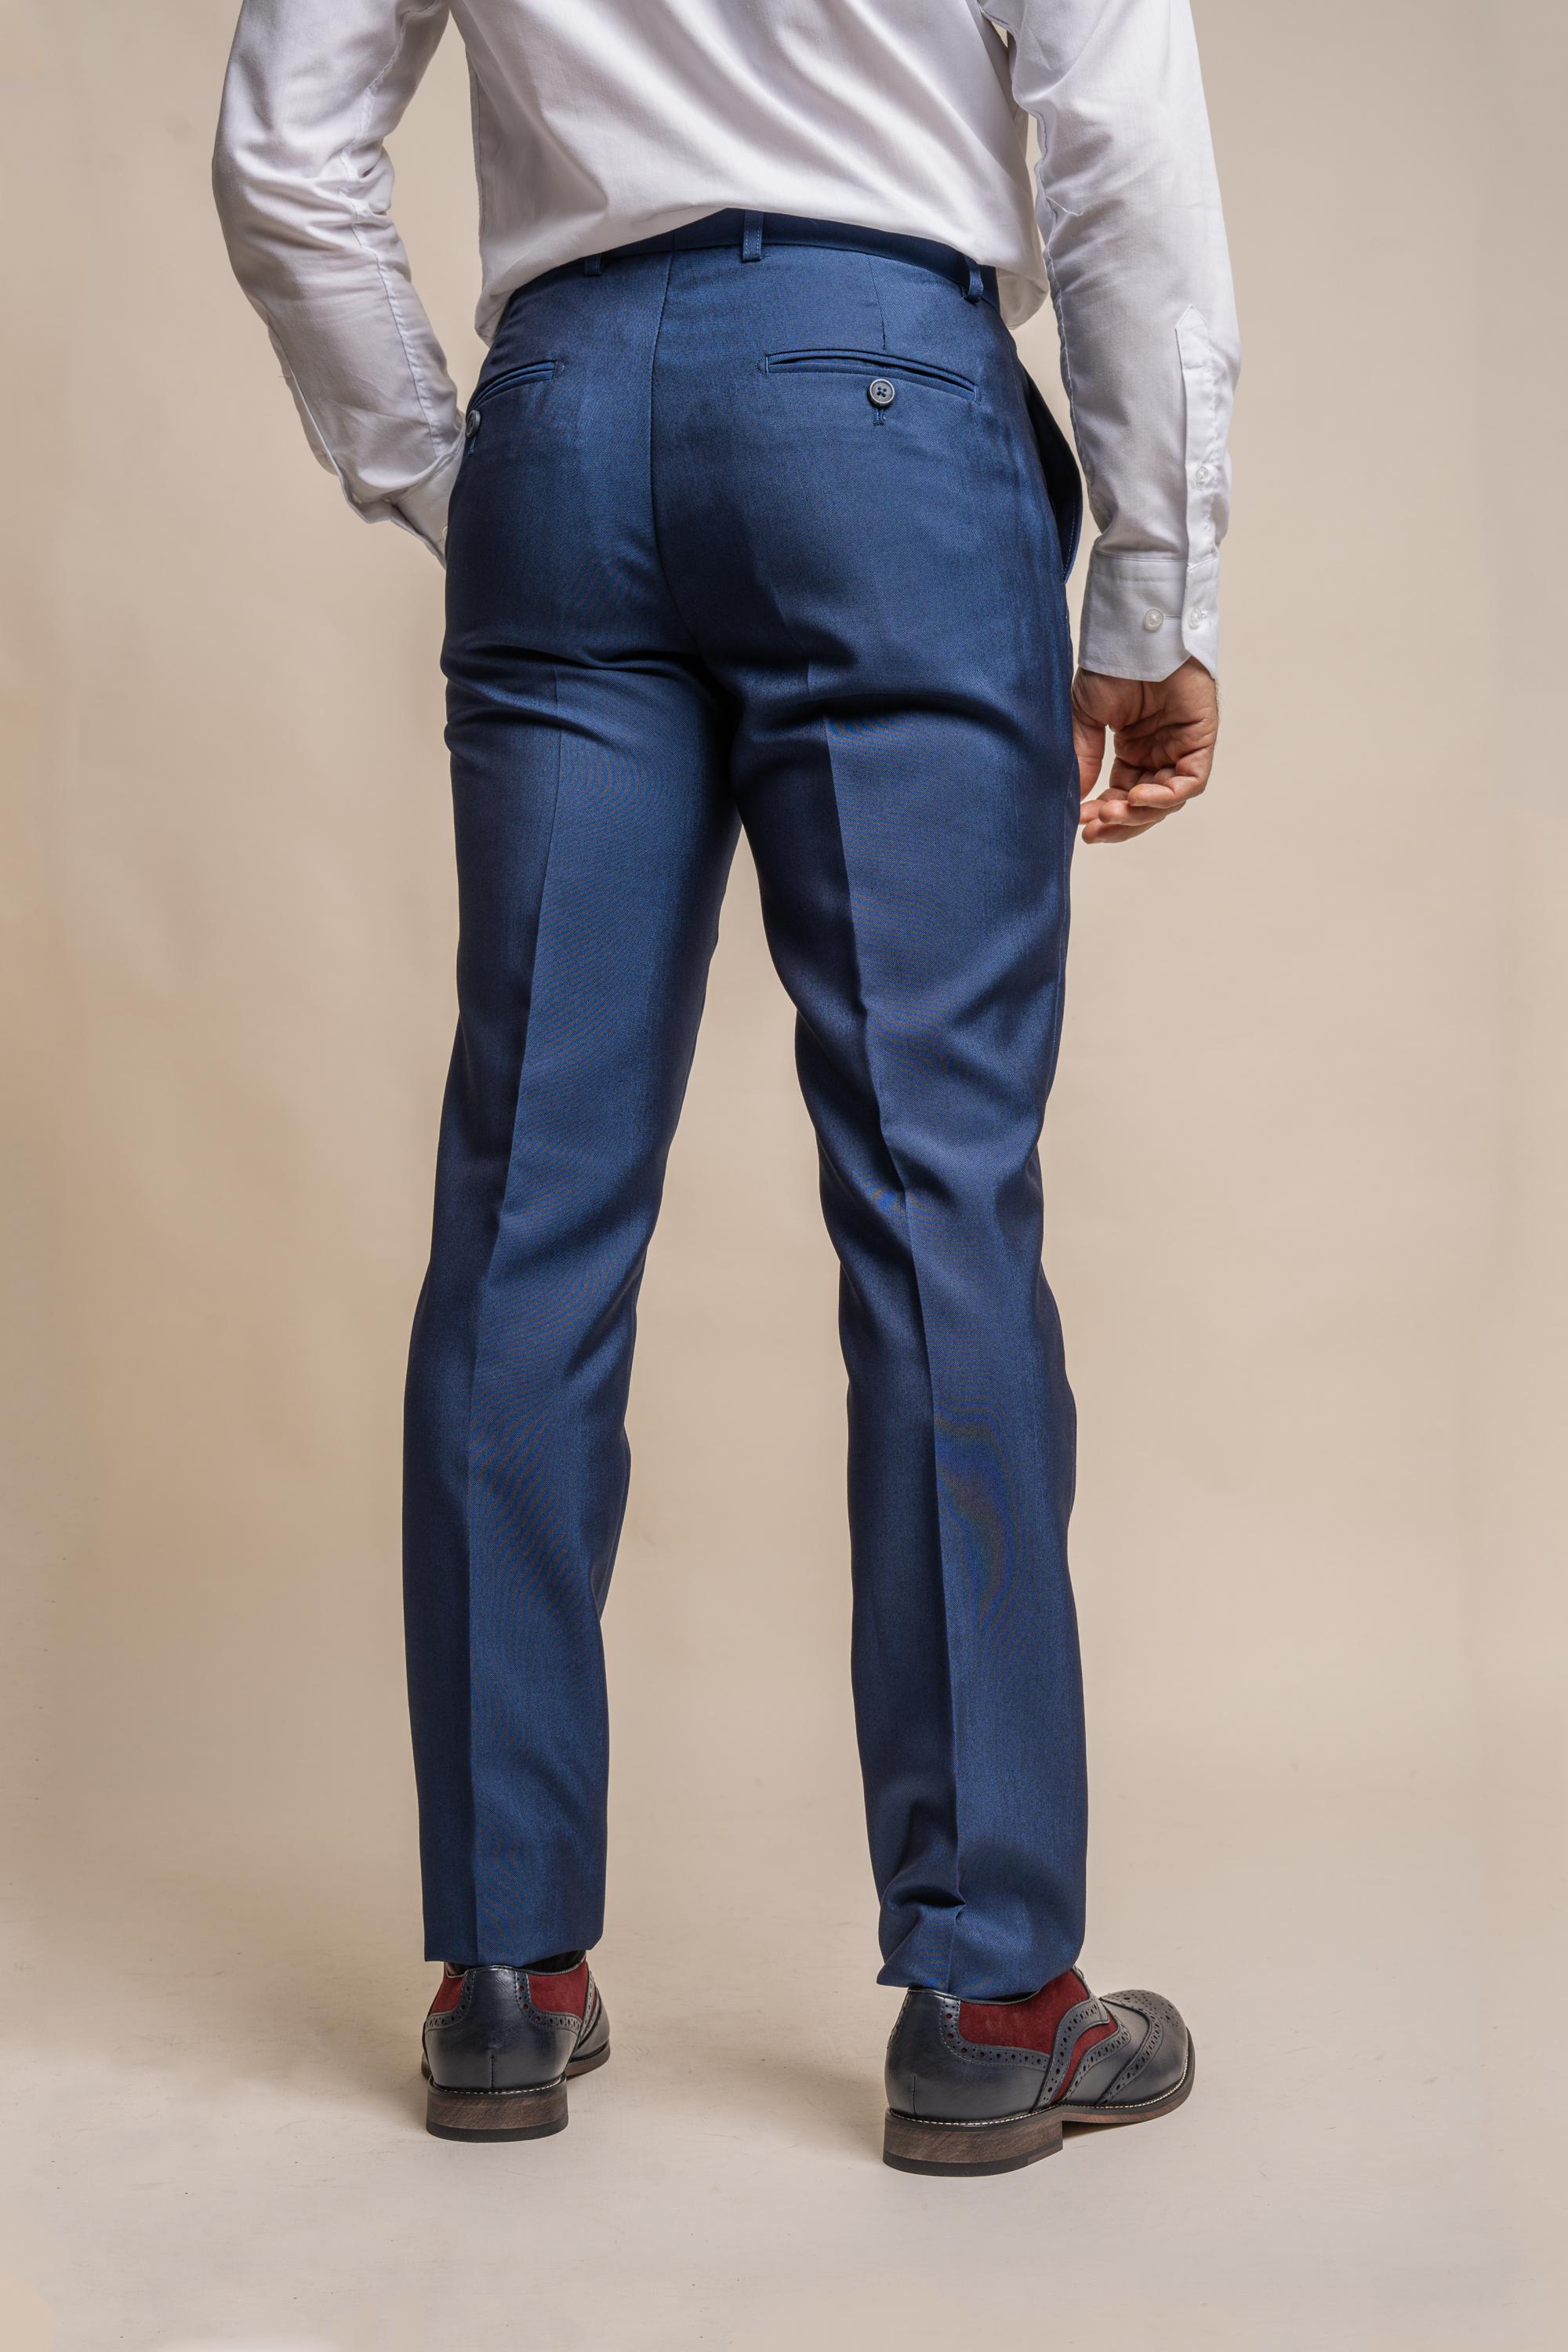 Blue Mens Dress Pants Men's Casual Solid Skinny Pencil Pants Zipper Elastic  Waist Pants Trousers - Walmart.com